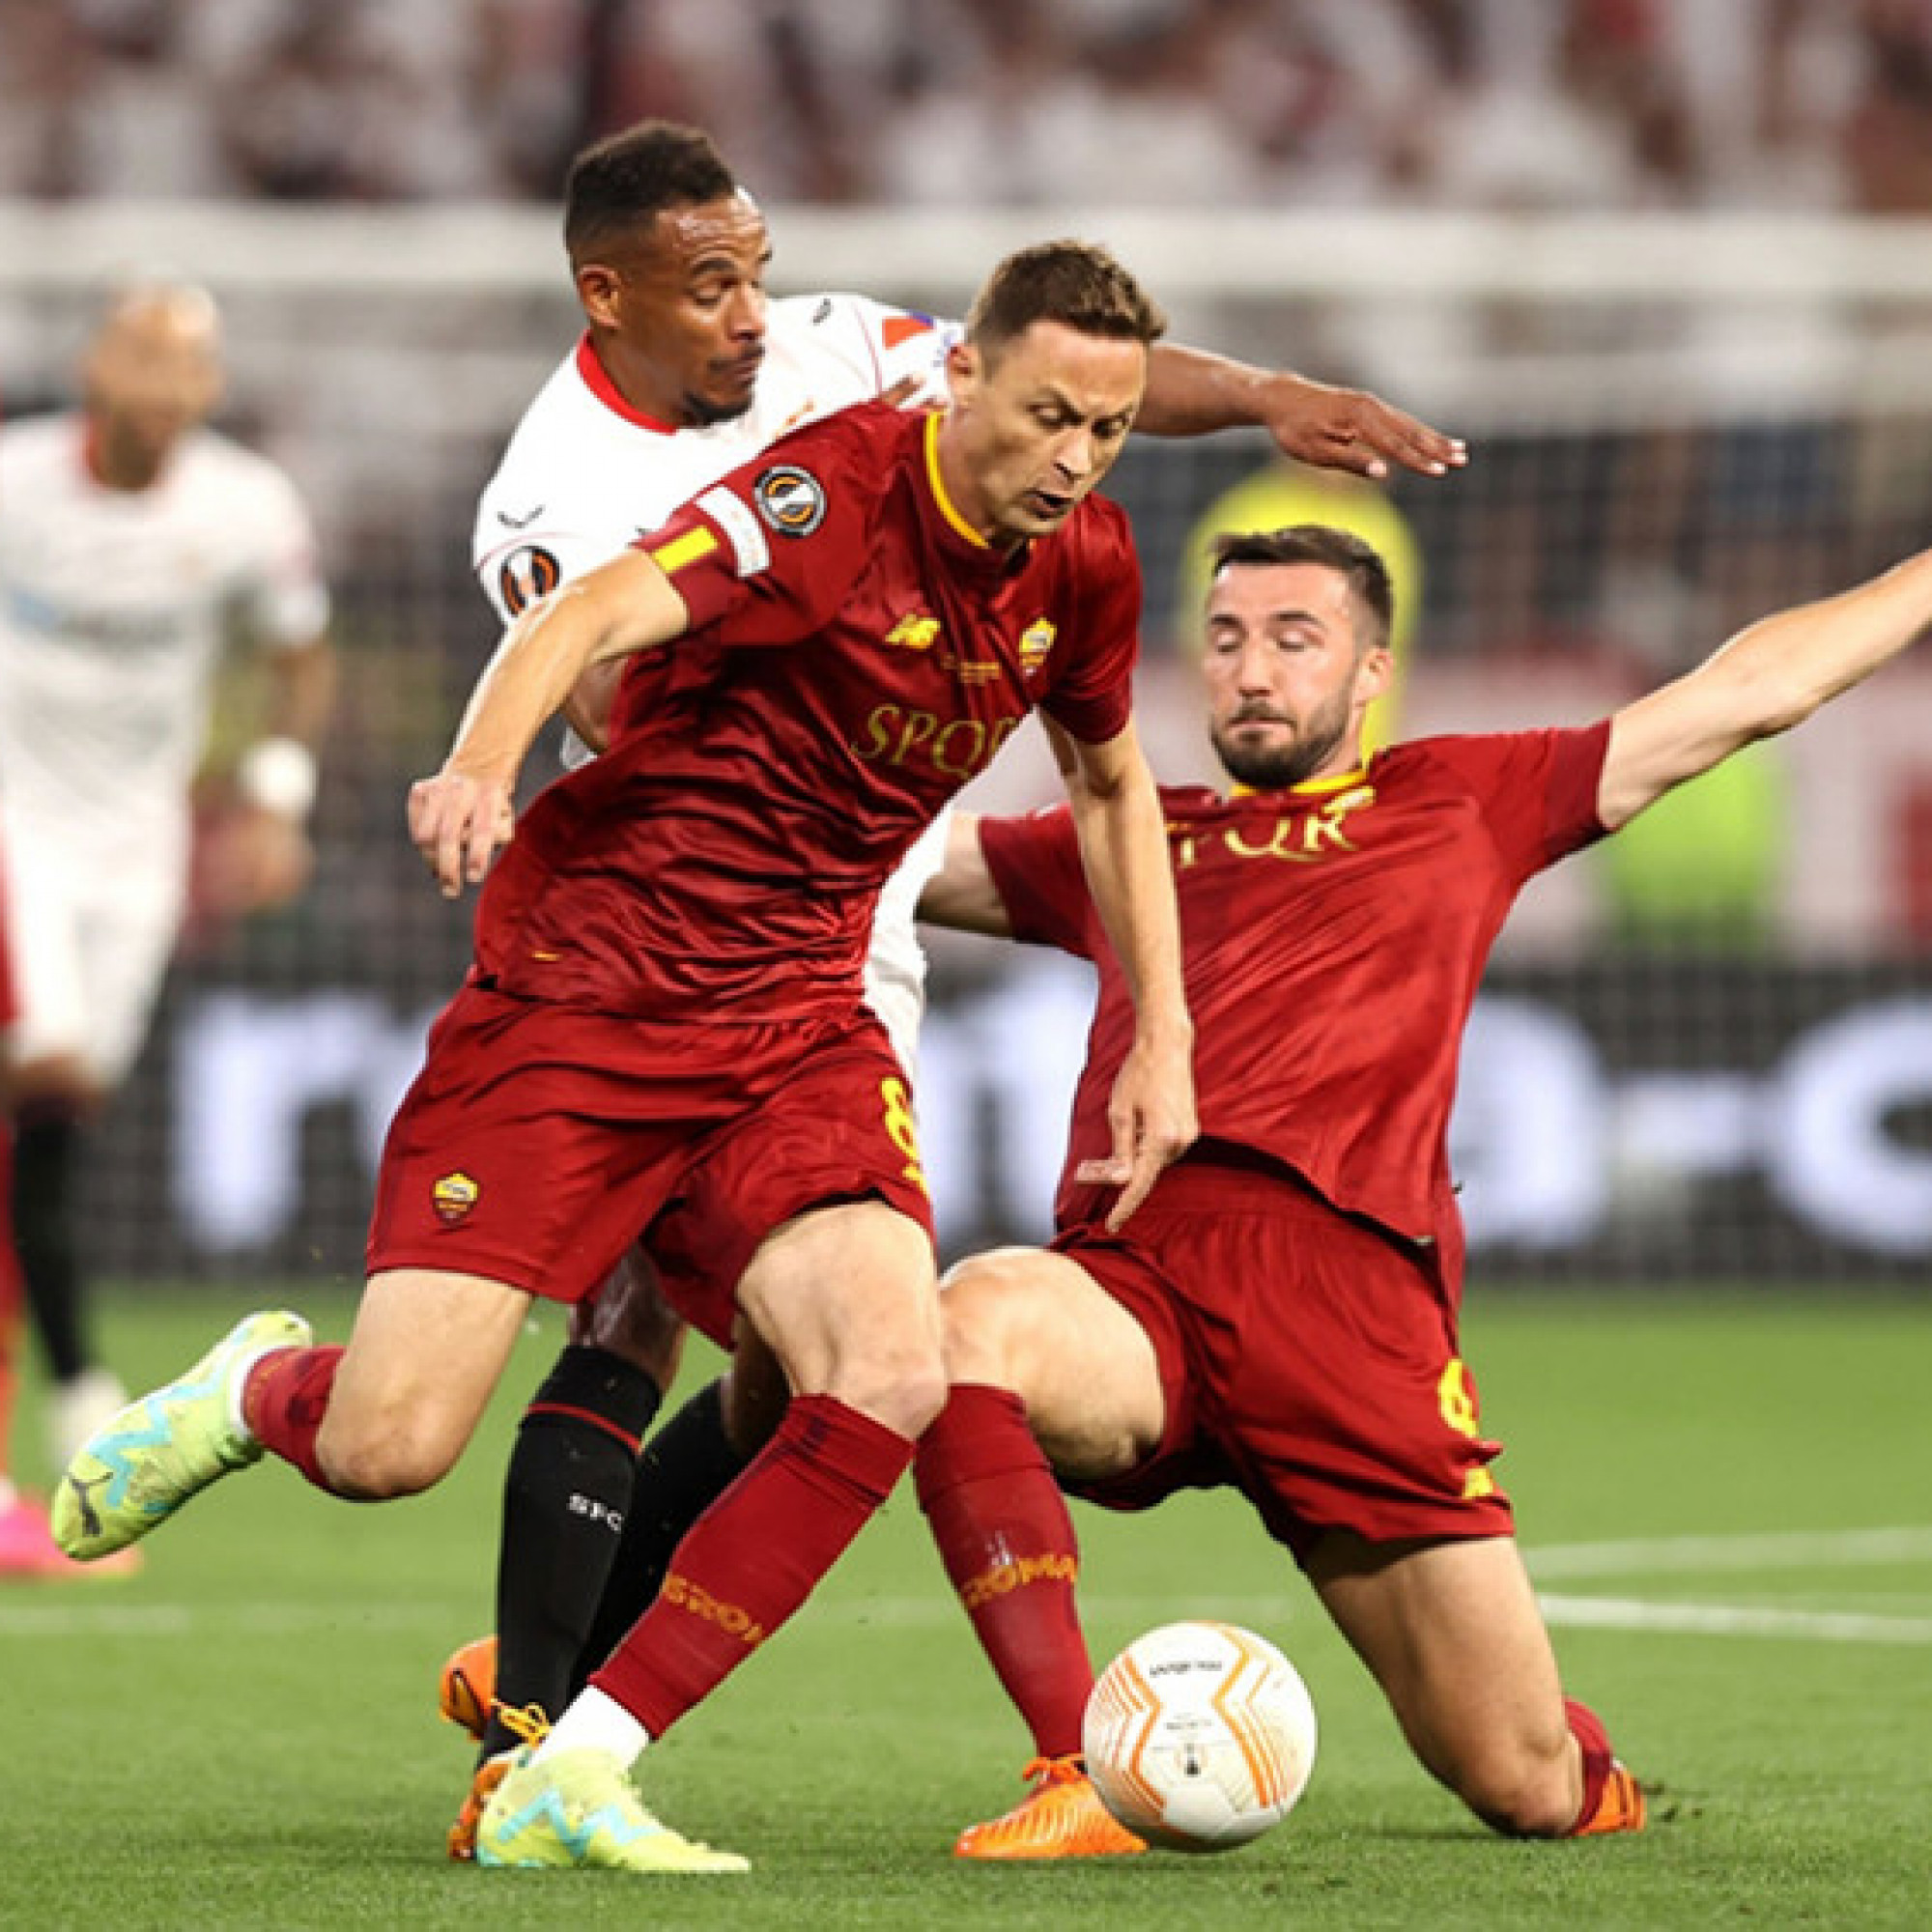  - Trực tiếp bóng đá Sevilla - AS Roma: Dybala mở tỷ số (Europa League)